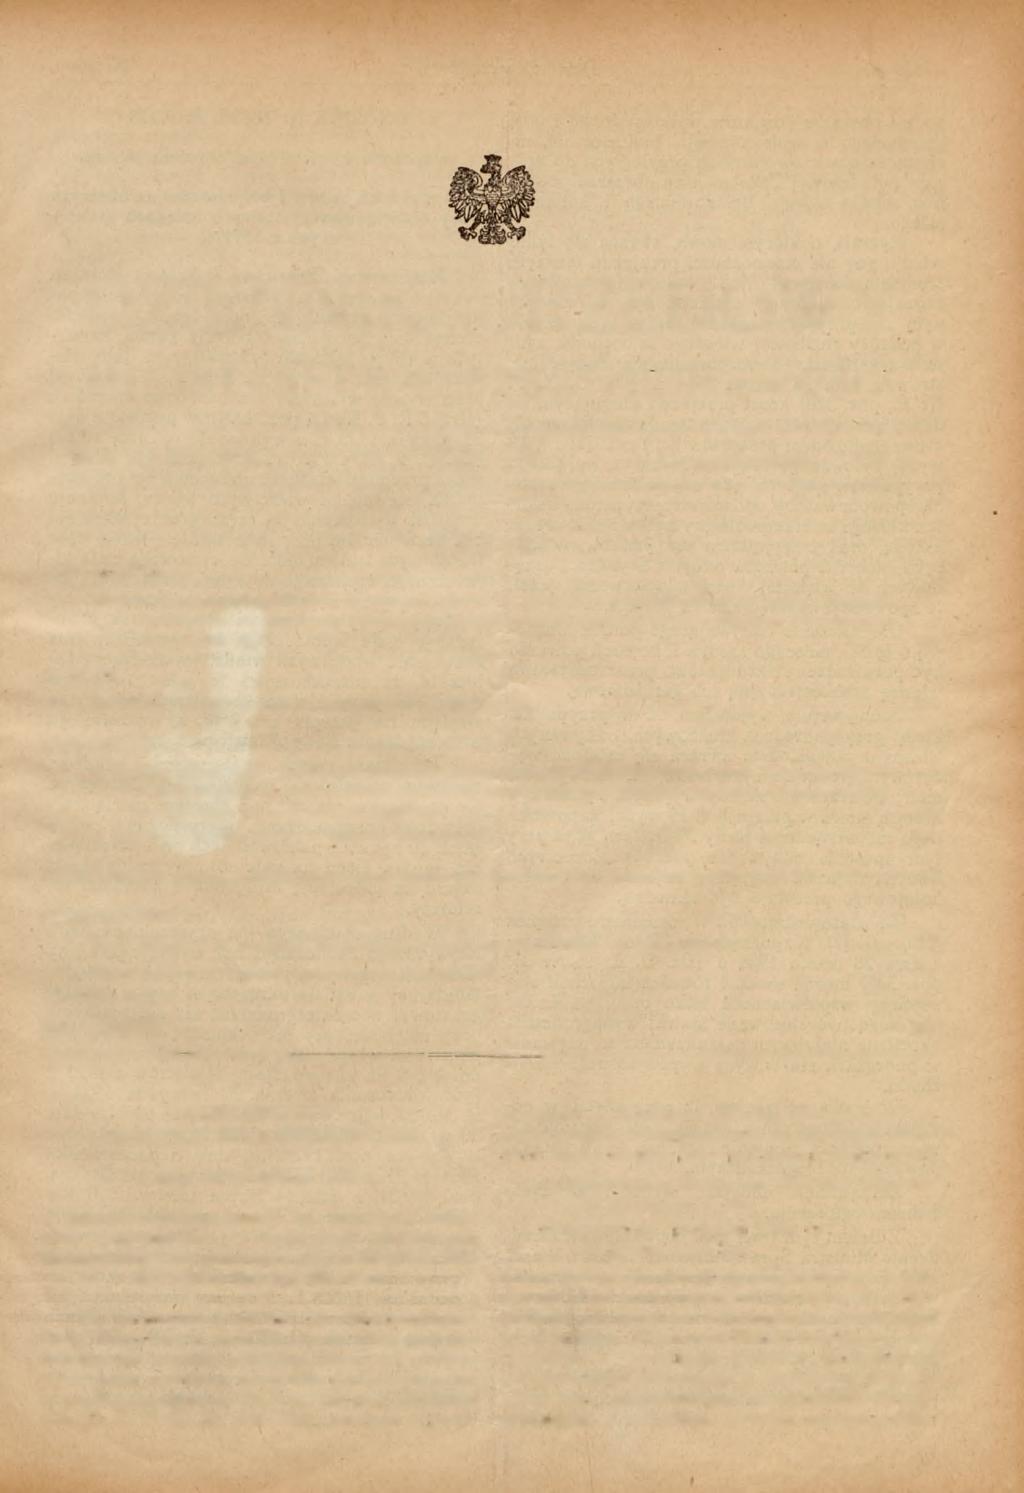 WARSZAWA. Nr 10. 15 października 1938 r. Z A R Z Ą D Z E N IE TREŚĆ: Ministra Sprawiedliwości z dnia 16 września 1938 r.